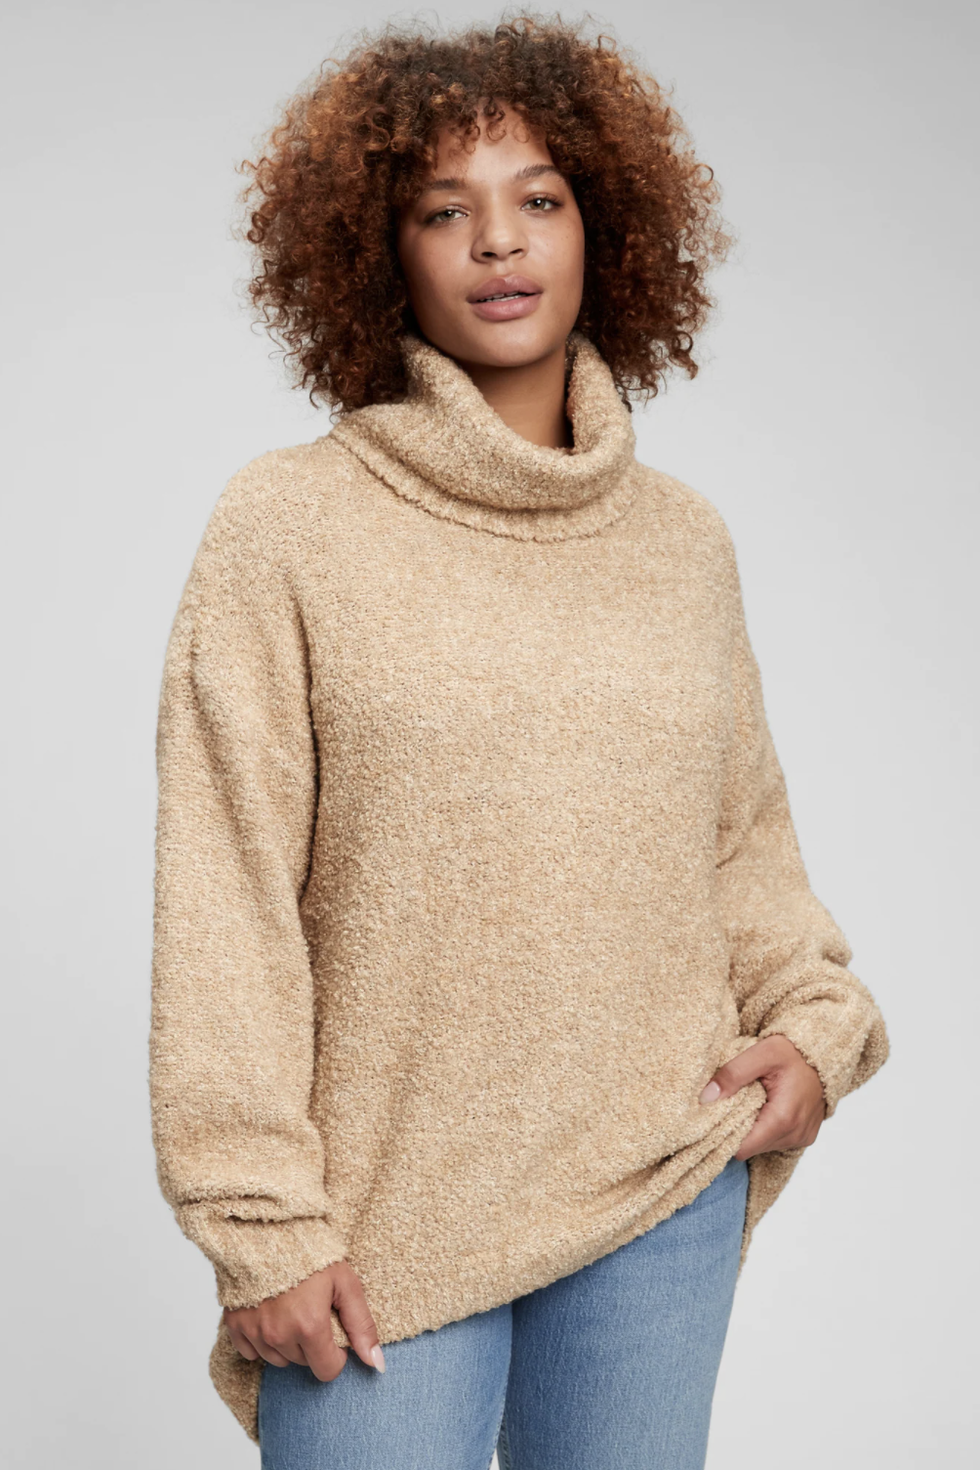 Women's Cowl Neck Hoodies & Sweatshirts